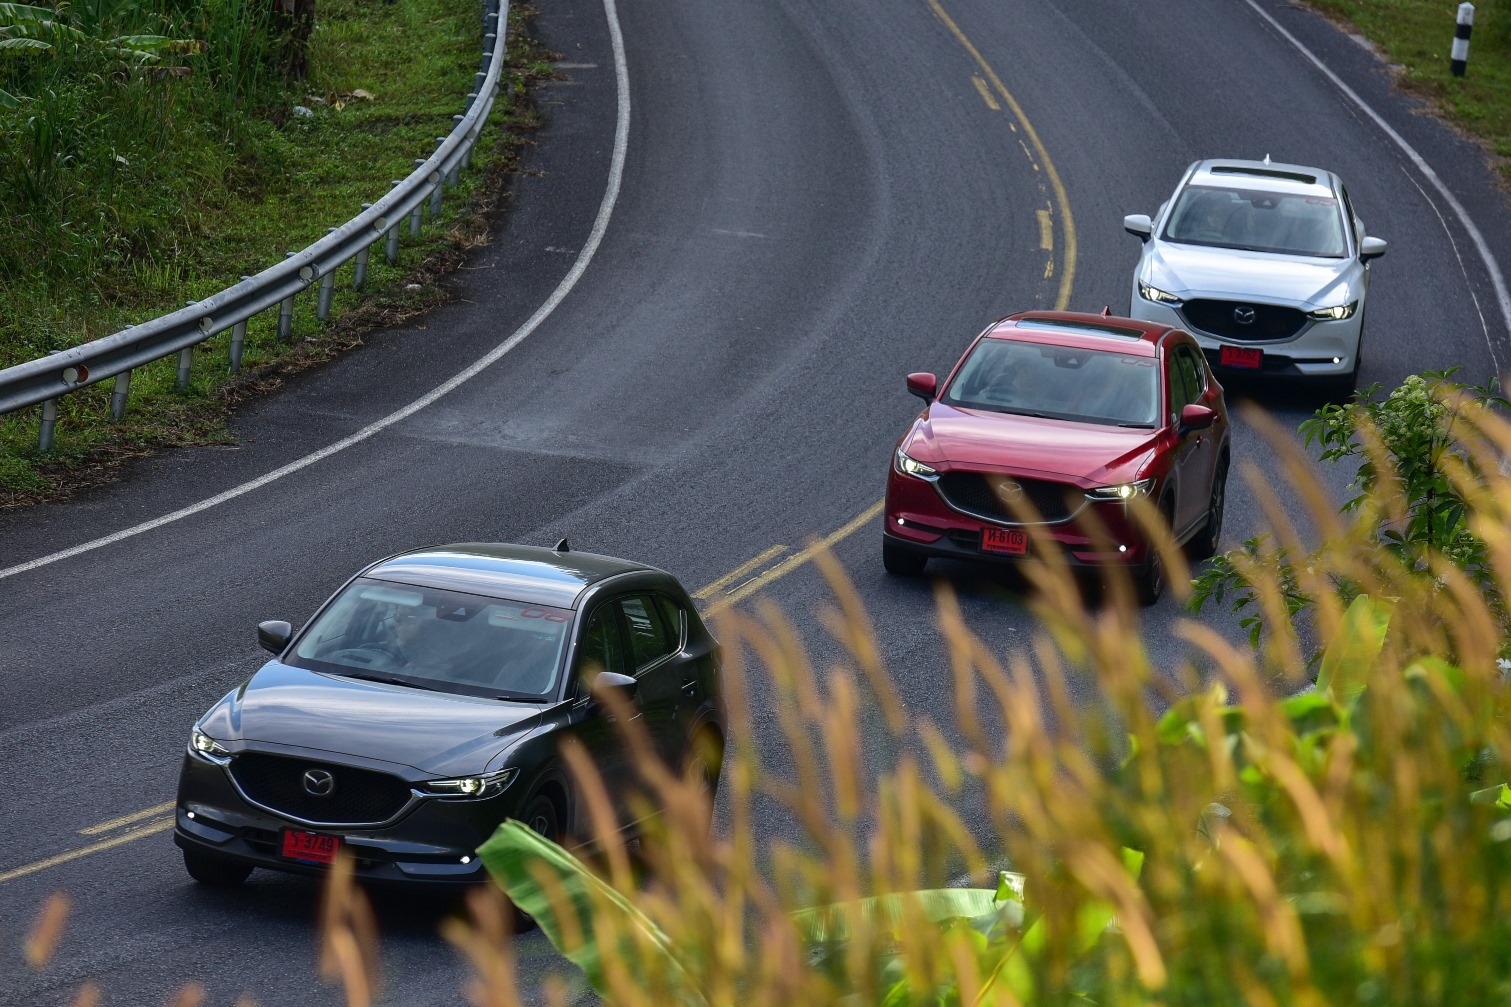 ผงาดครองแชมป์! Mazda มุ่งสู่อันดับ 1 ยอดขายตลาดเอสยูวีในเดือนเมษายน